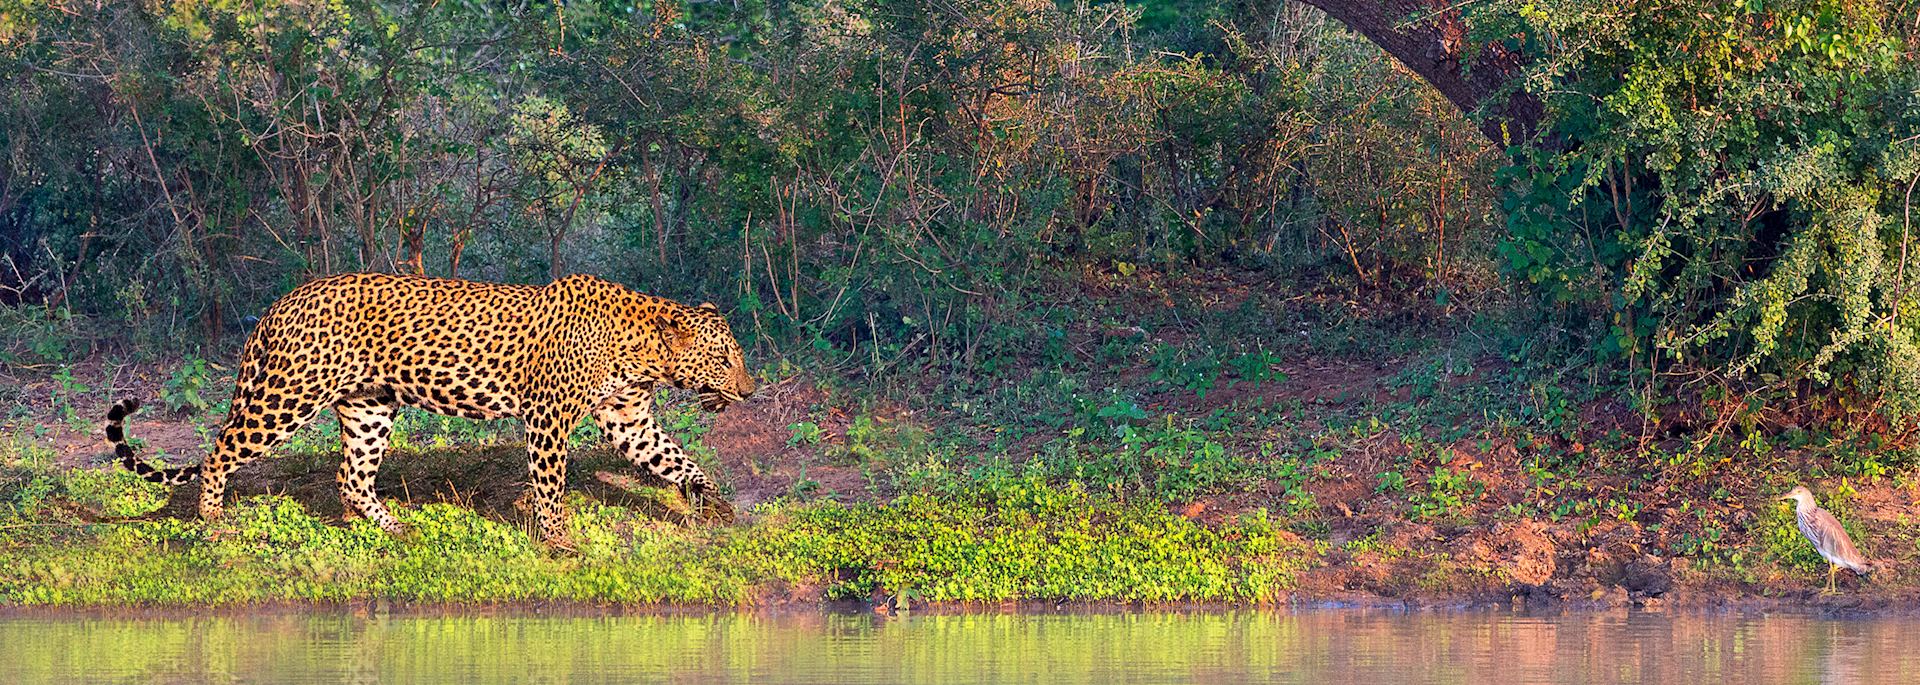 Leopard, Sri Lanka